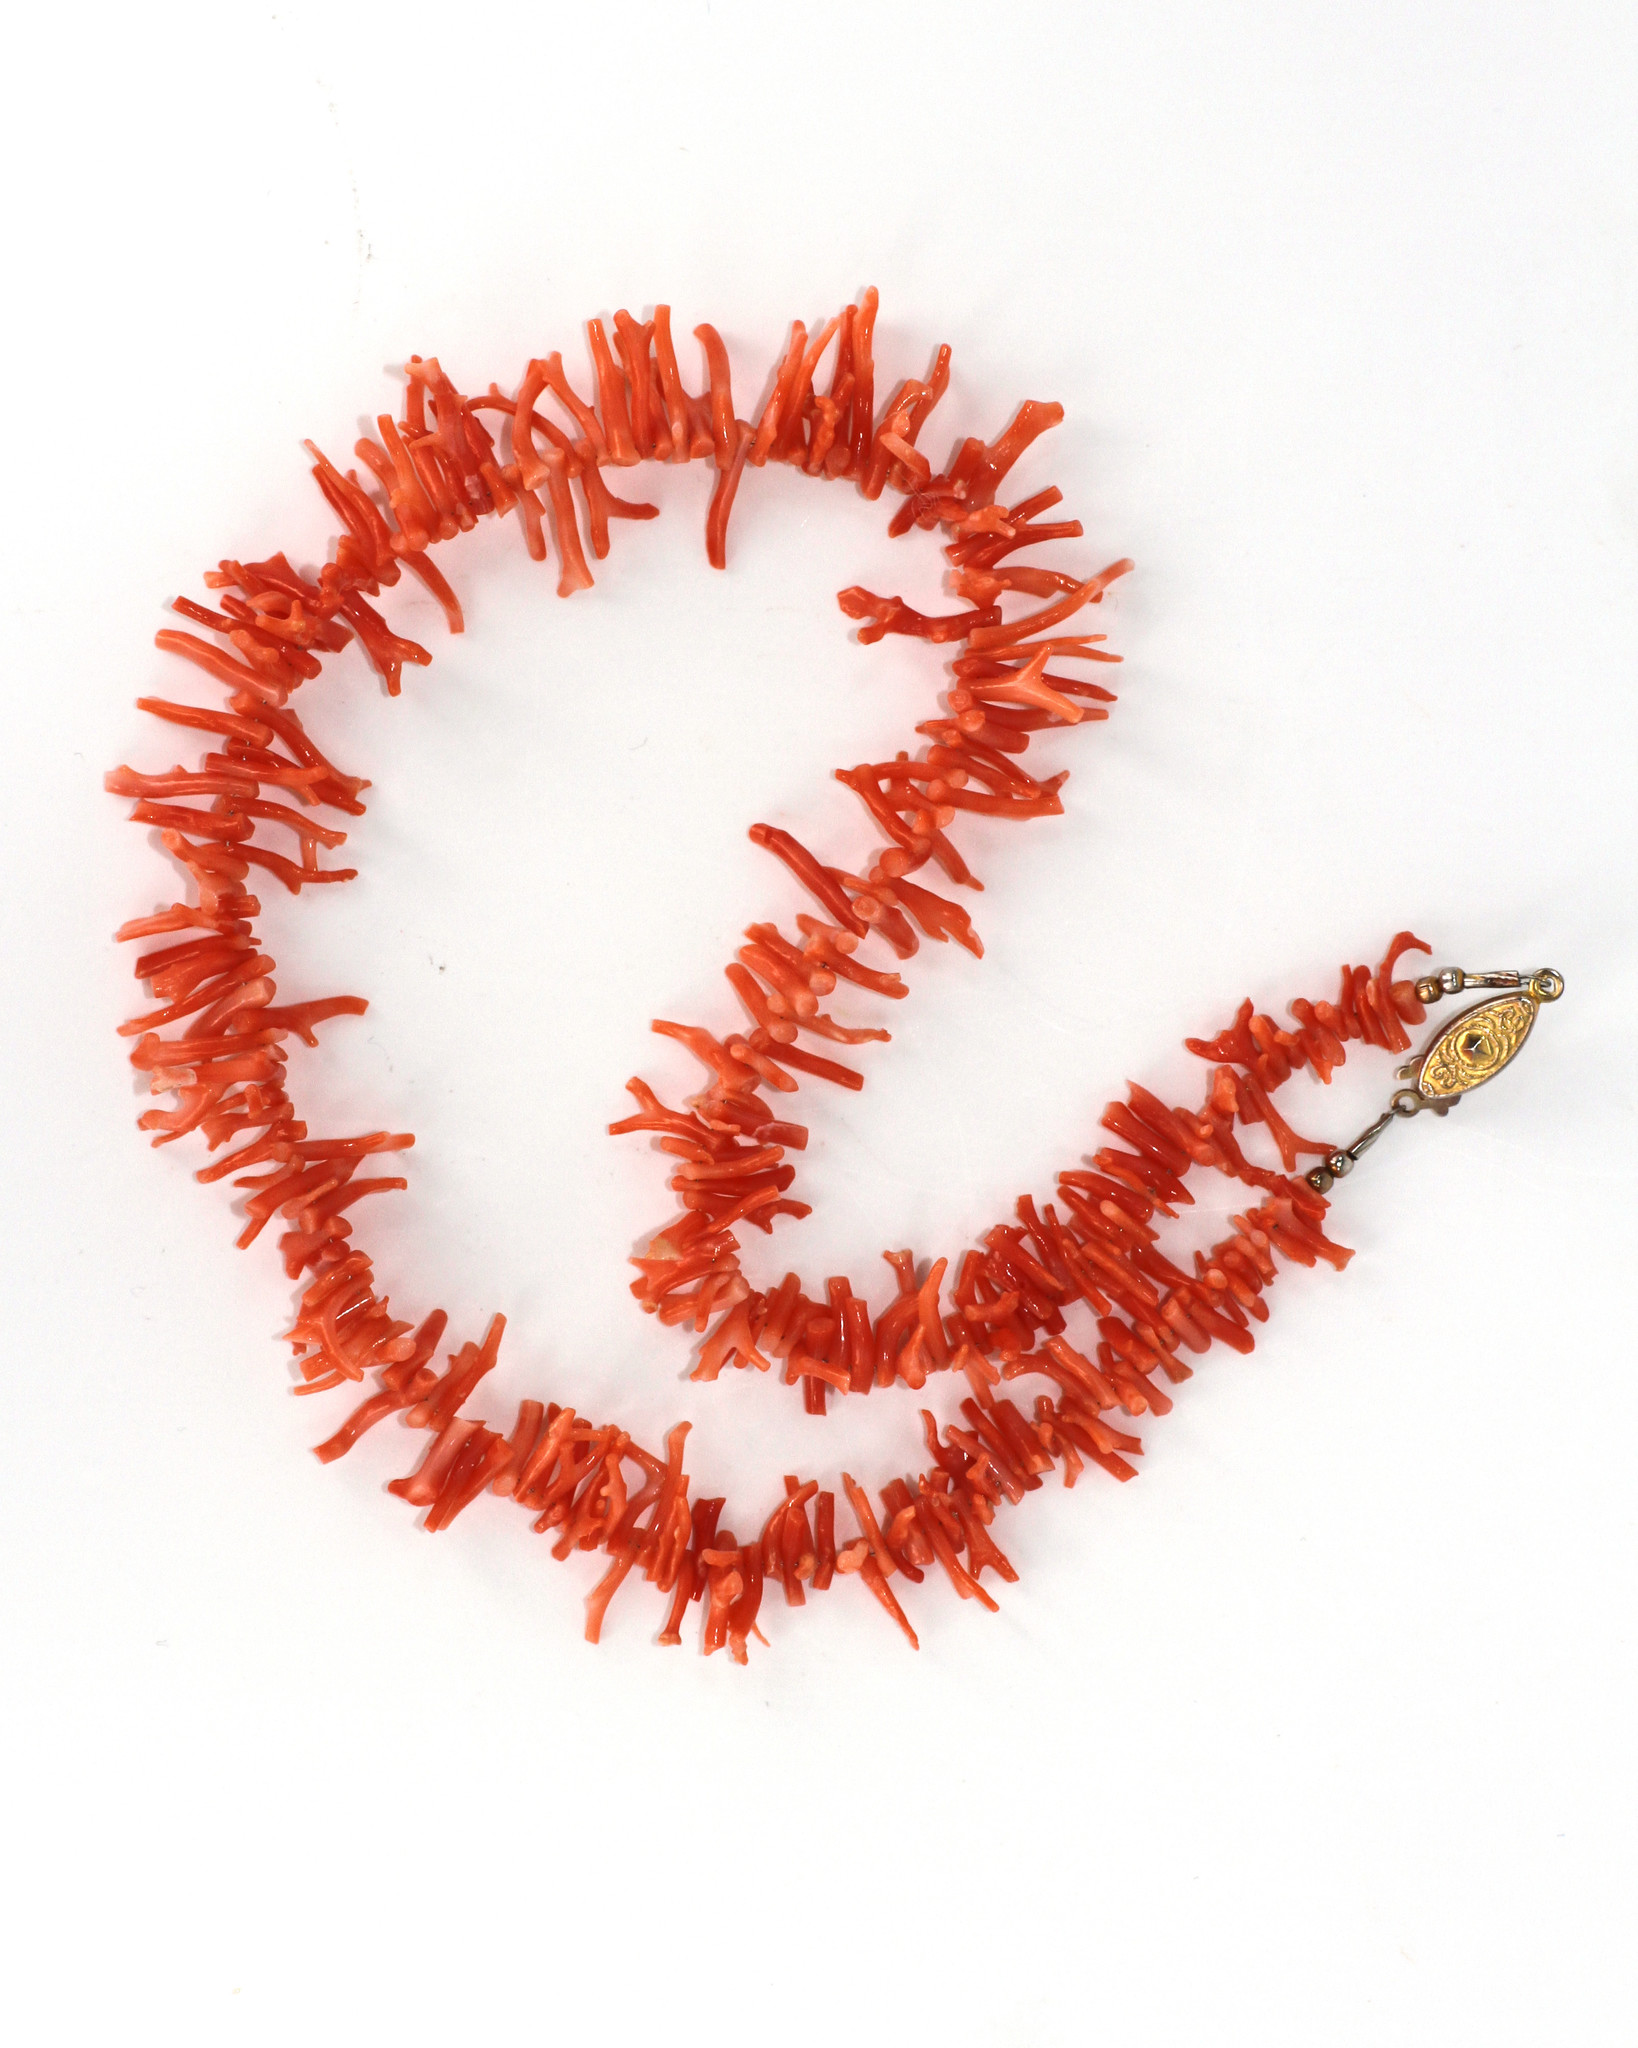 Coral Necklace Sale | Real Antique & Vintage Coral Necklace Auctions Online